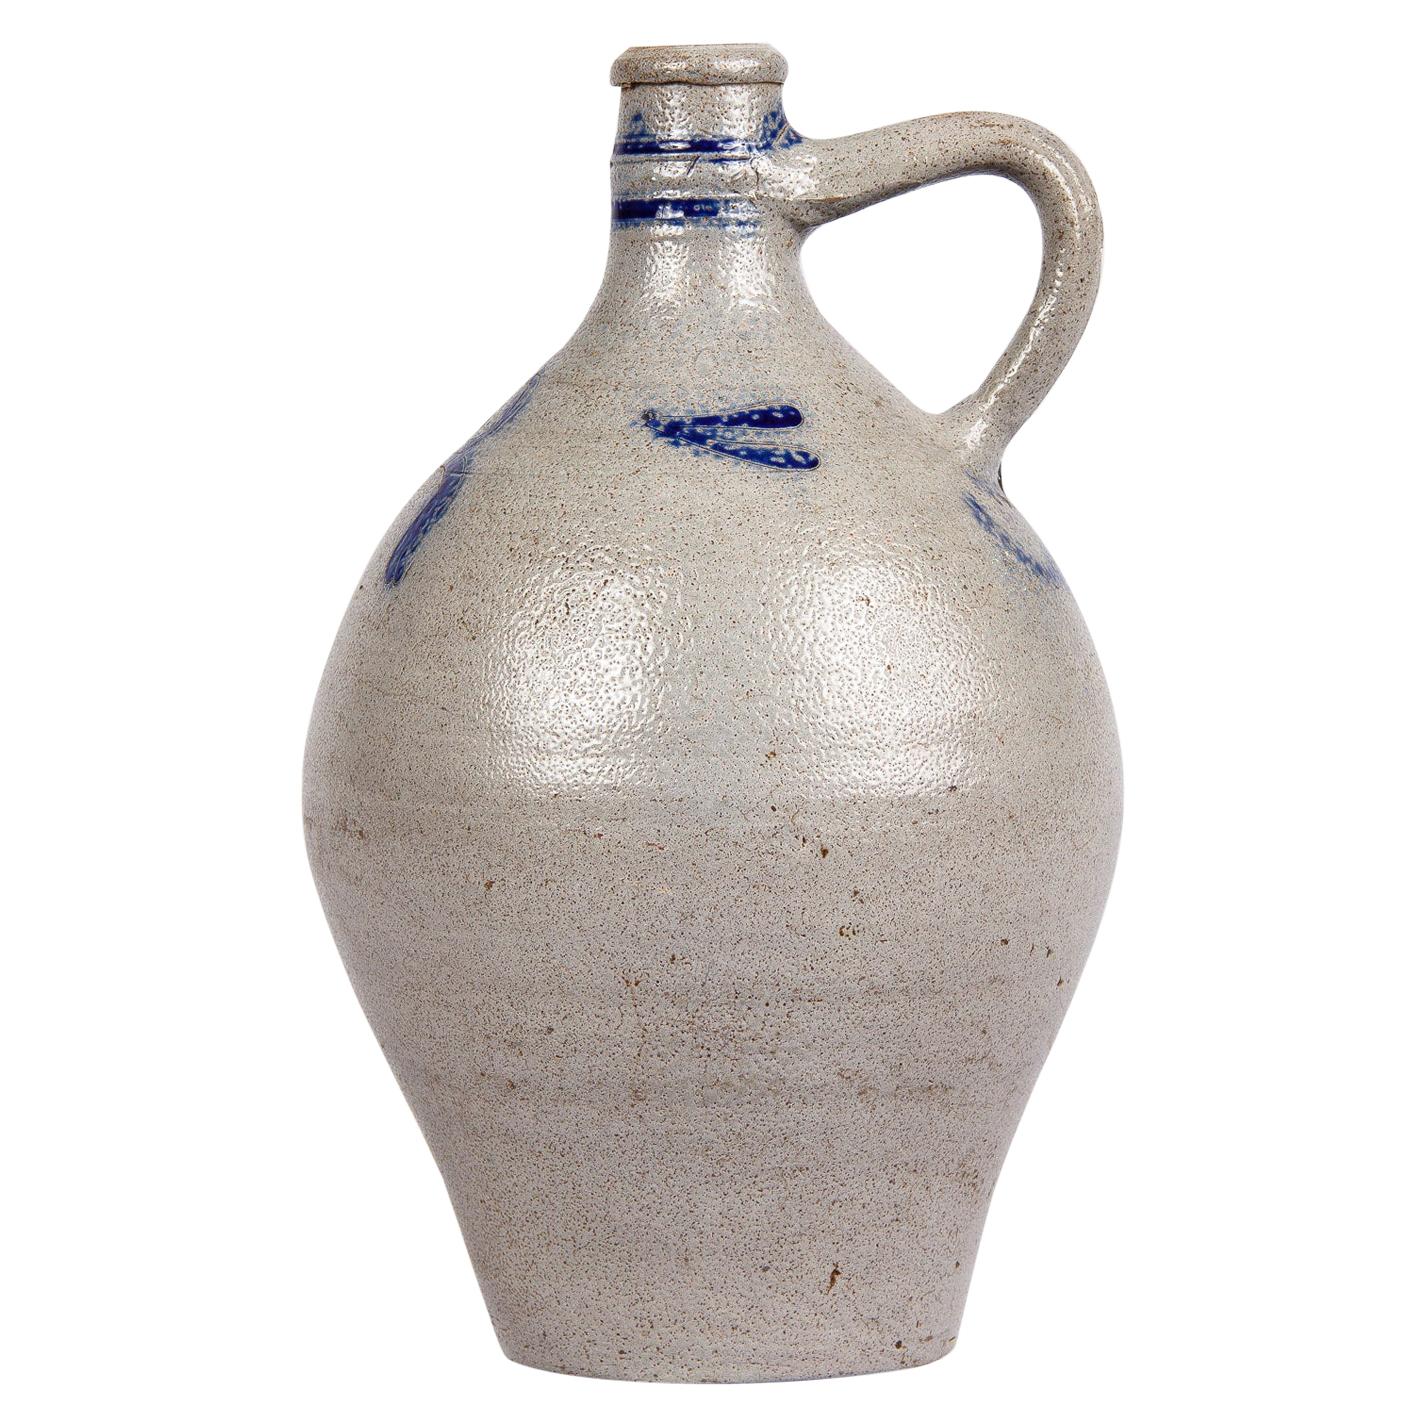 Earthenware Jar from Alsace Region, France, 1920s